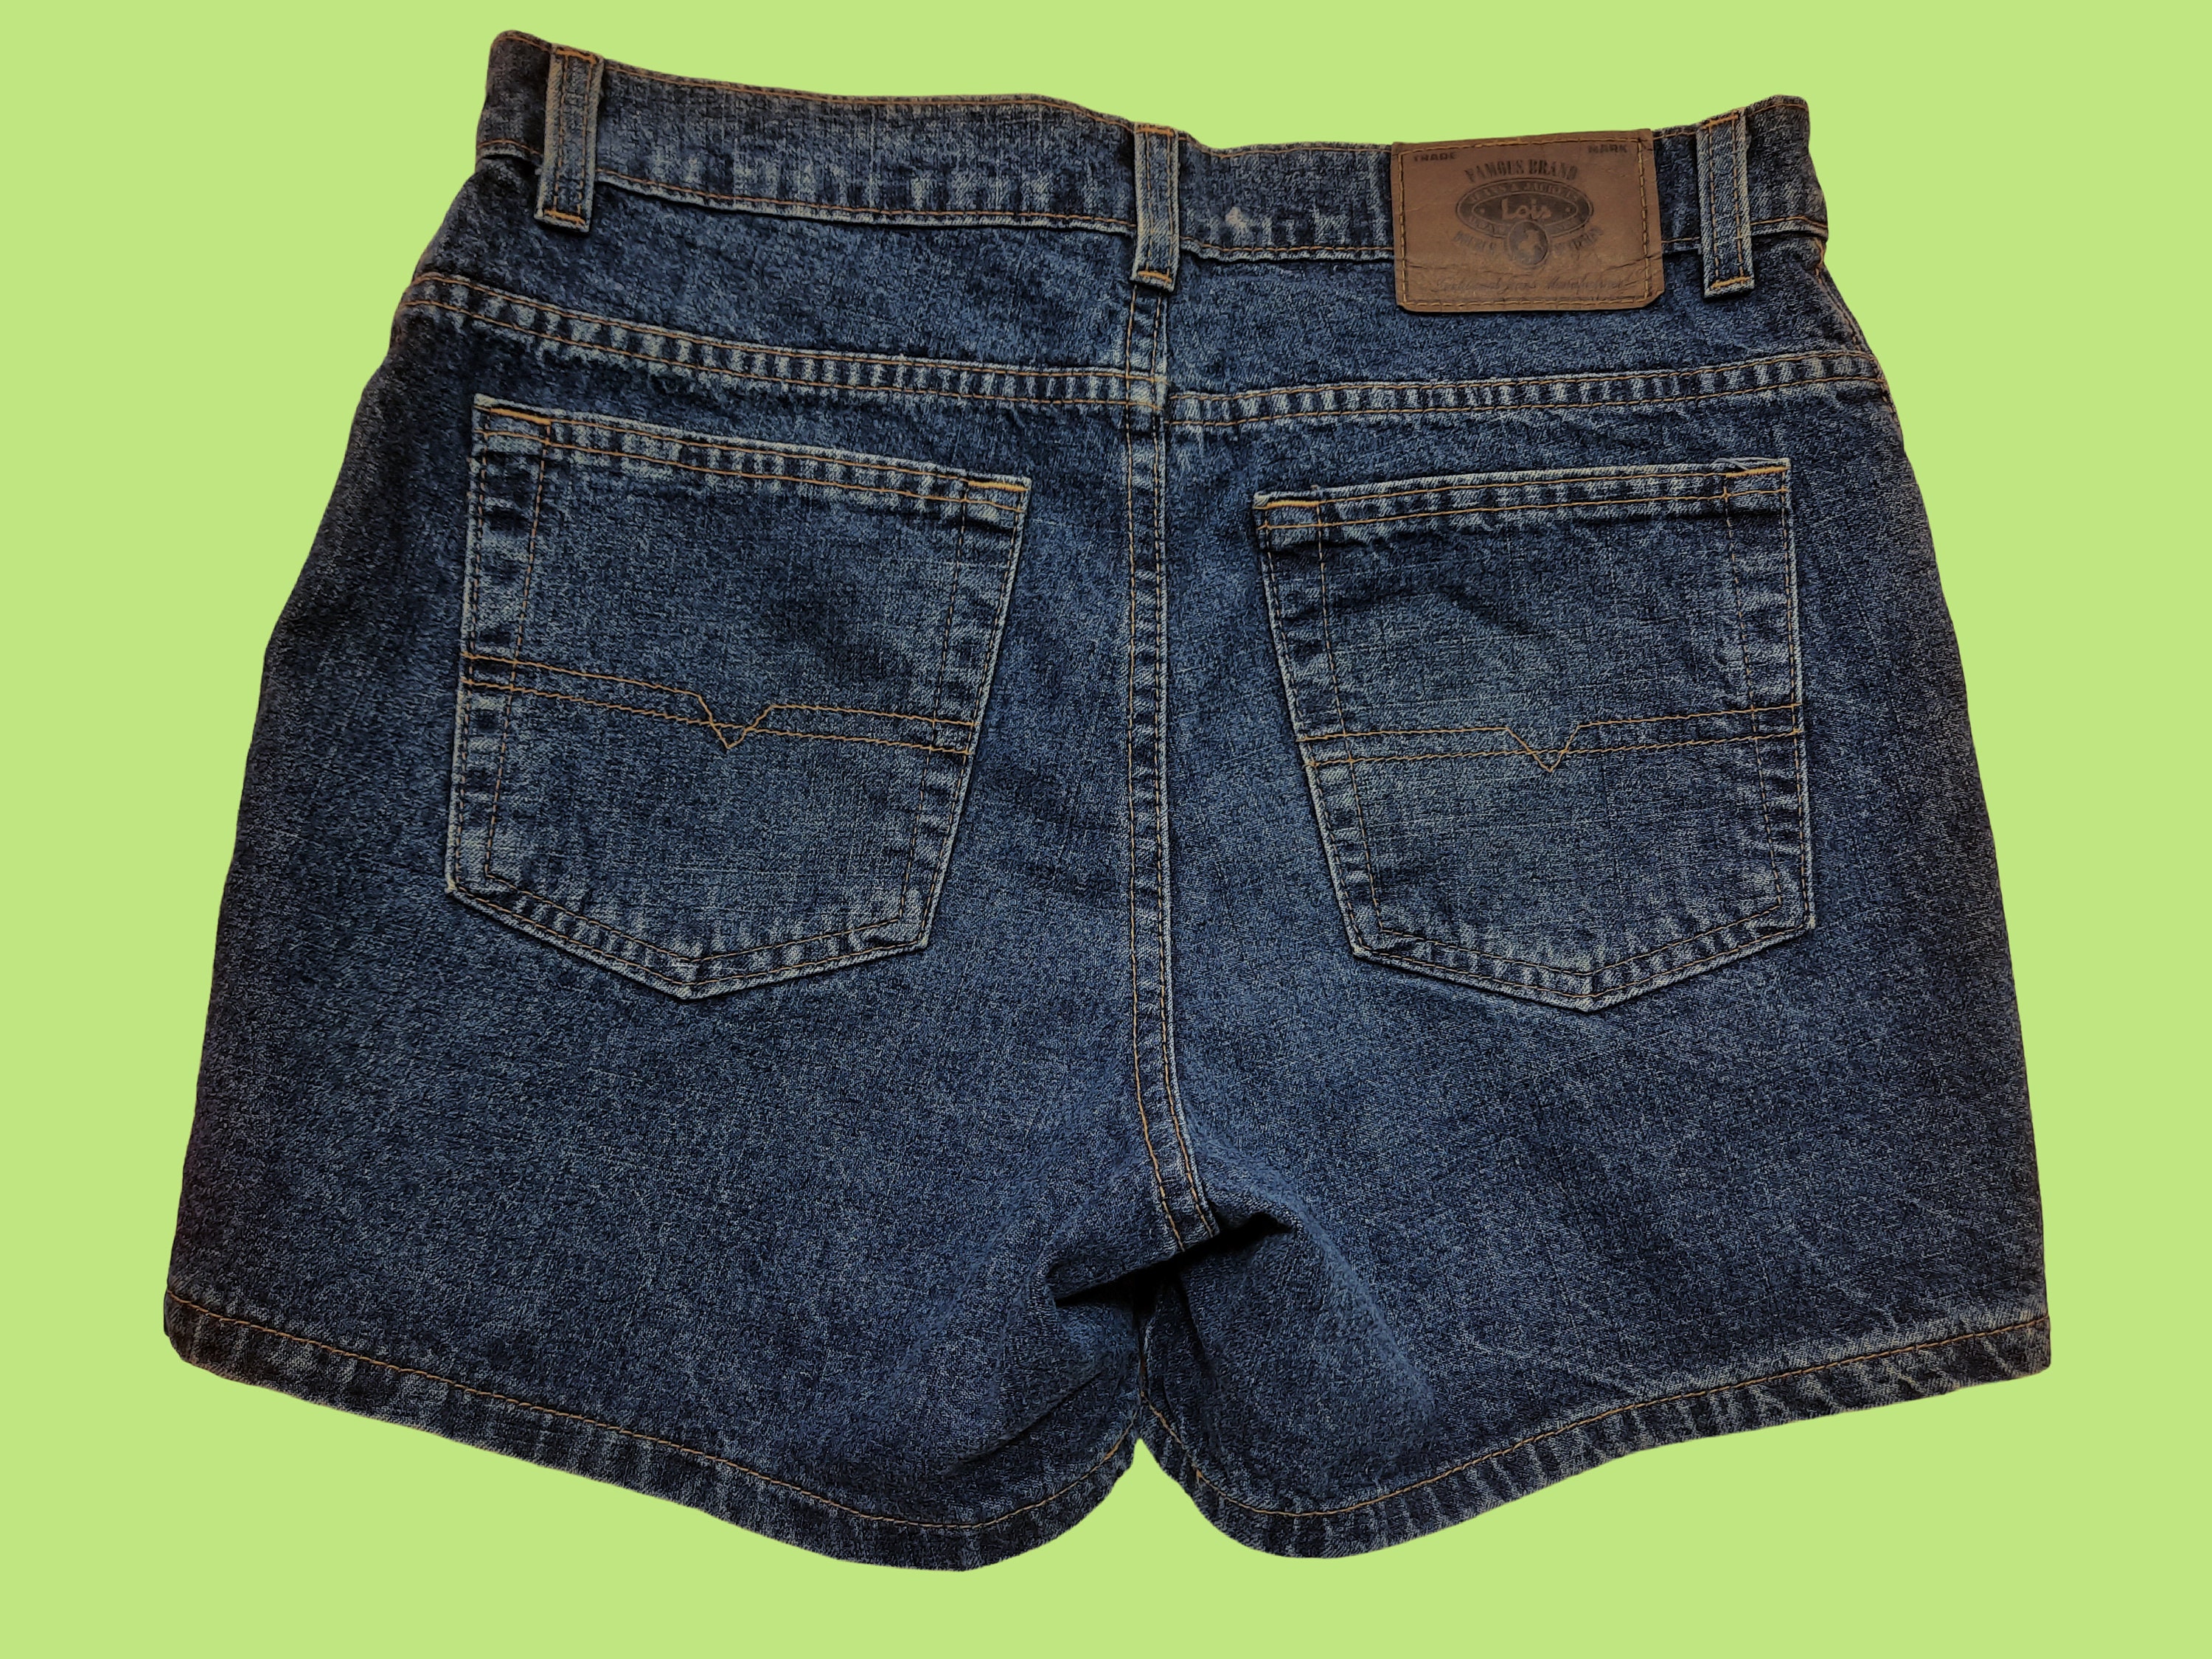 stam instinct Extractie Vintage 90s Lois Denim Jean Shorts Size 30 Medium Wash Cotton - Etsy Finland